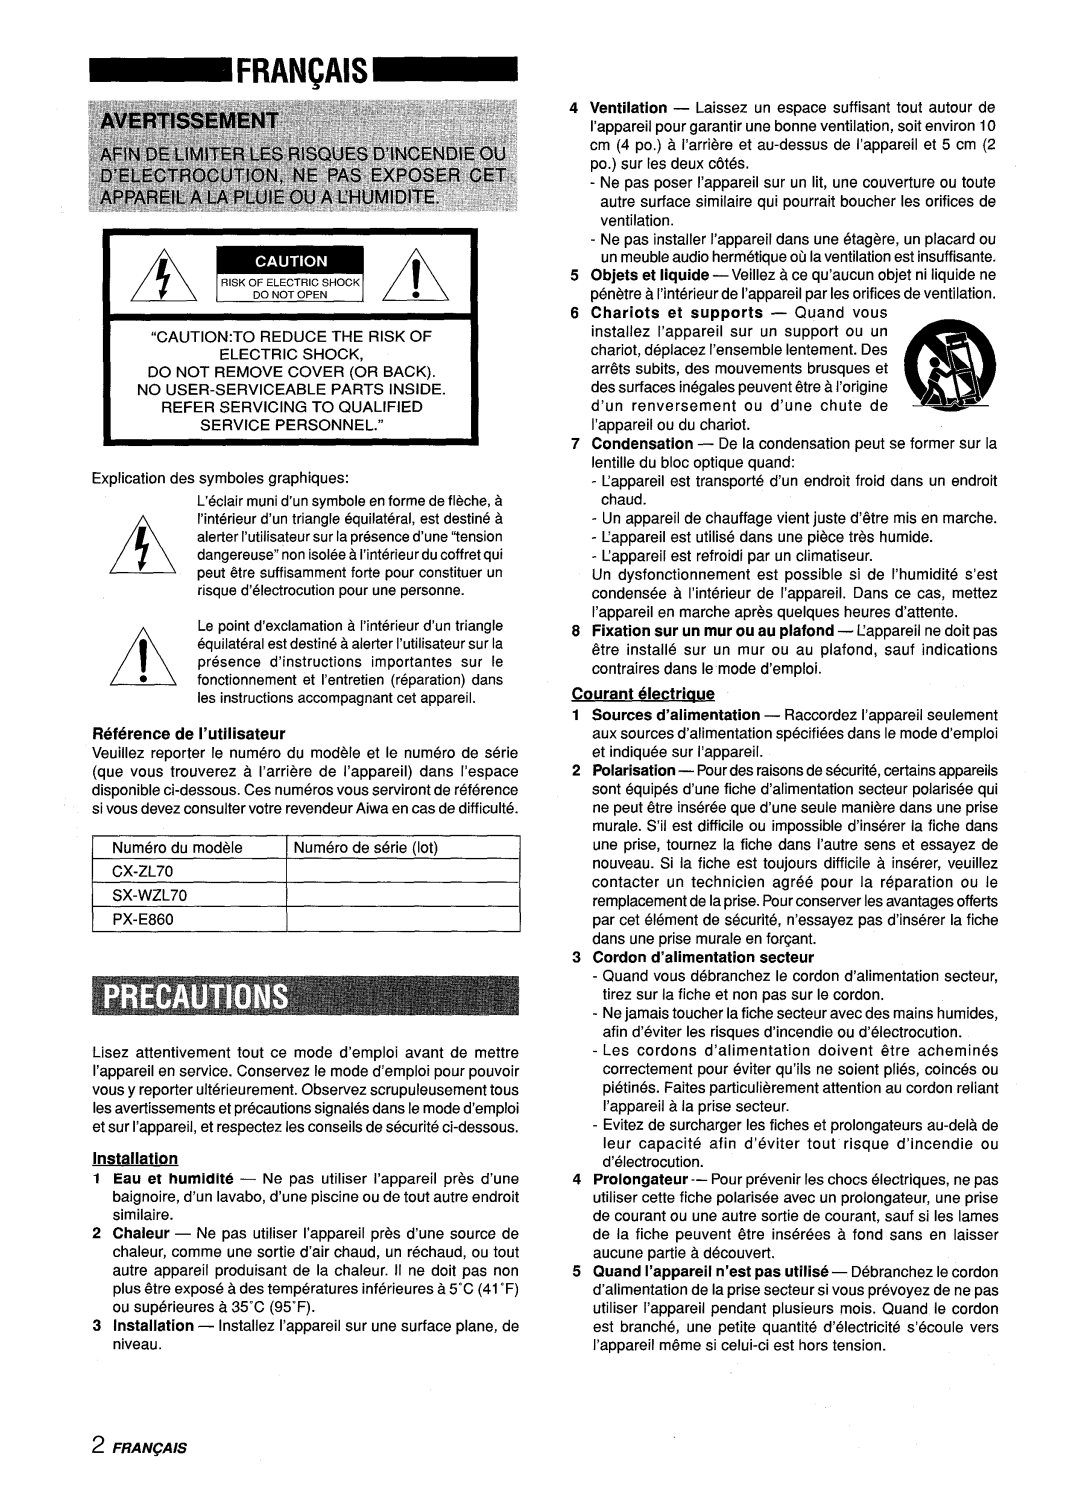 Aiwa Z-L70 manual Courant electriaue, Reference de I’utilisateur, Cordon d’alimentation secteur, Installation, Fran~Ais 